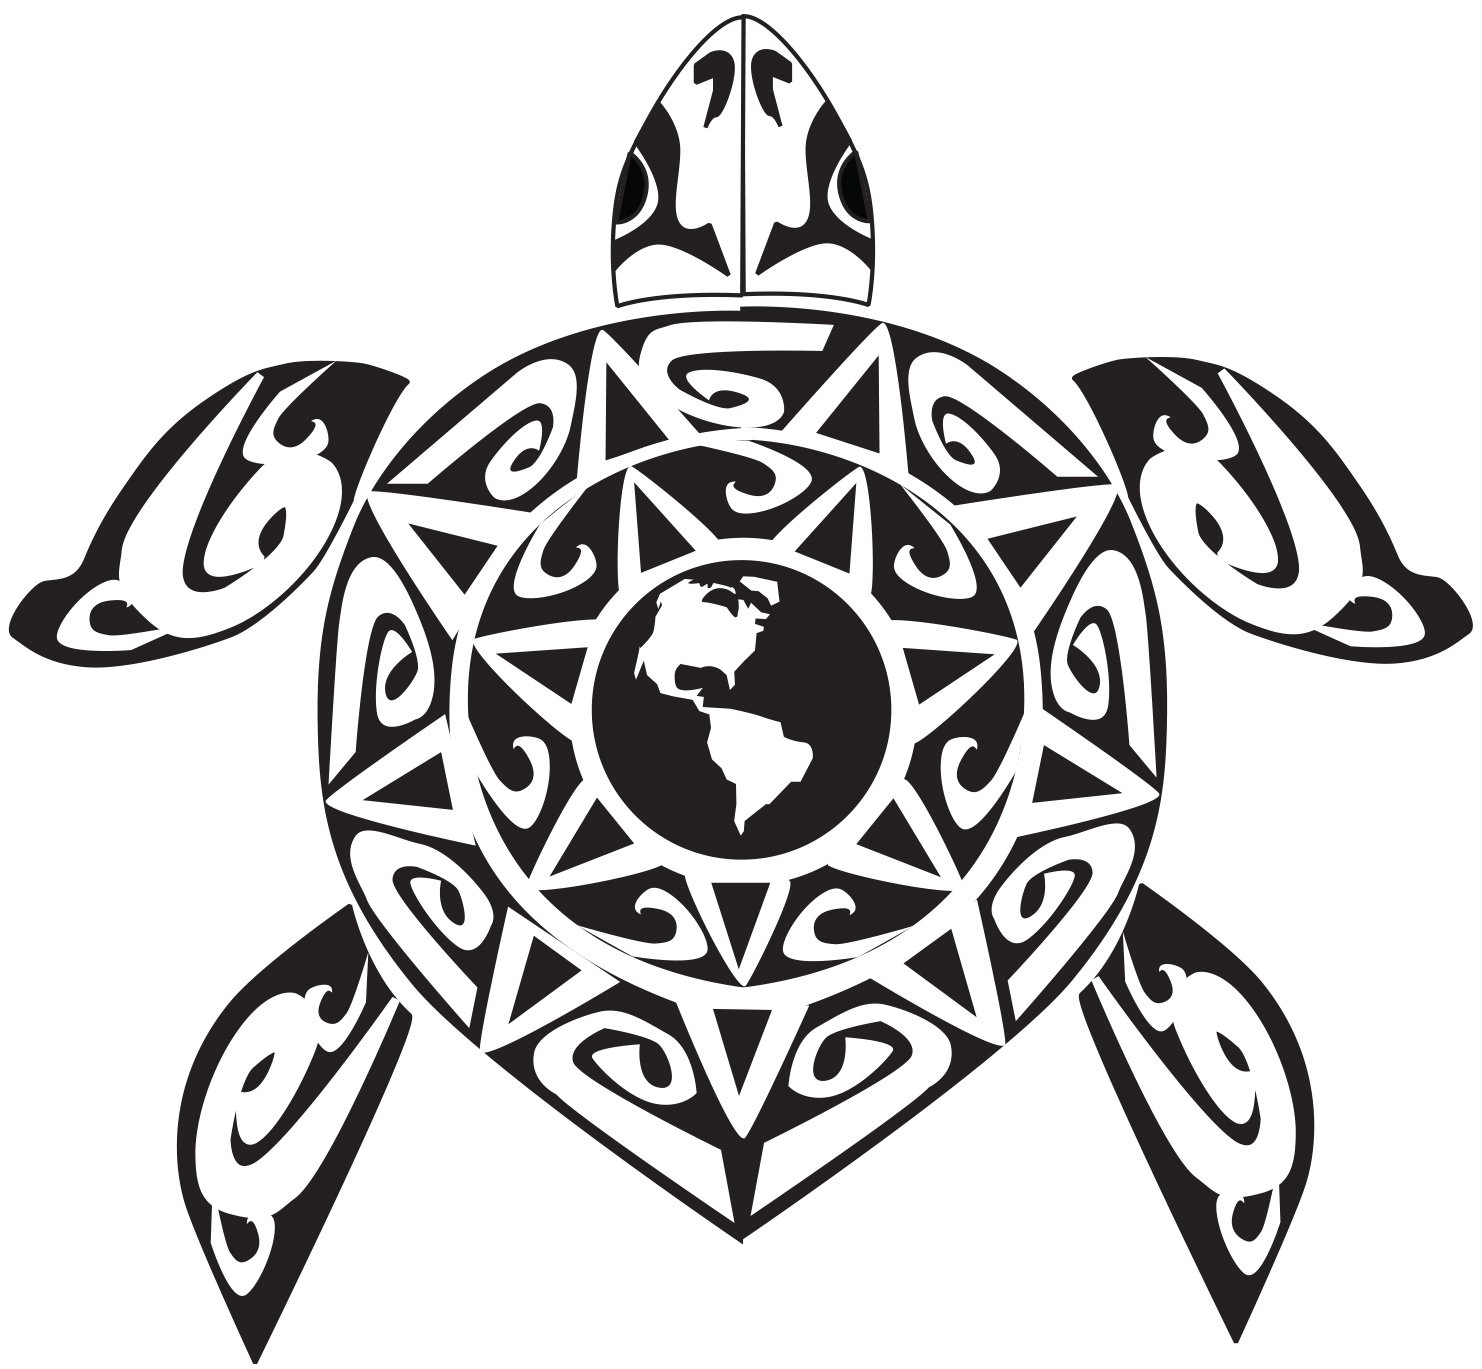 Племени солнца. Полинезийская черепаха тату. Тату черепаха в полинезийском стиле. Полинезийская черепаха тату эскиз. Маори Полинезия черепаха.